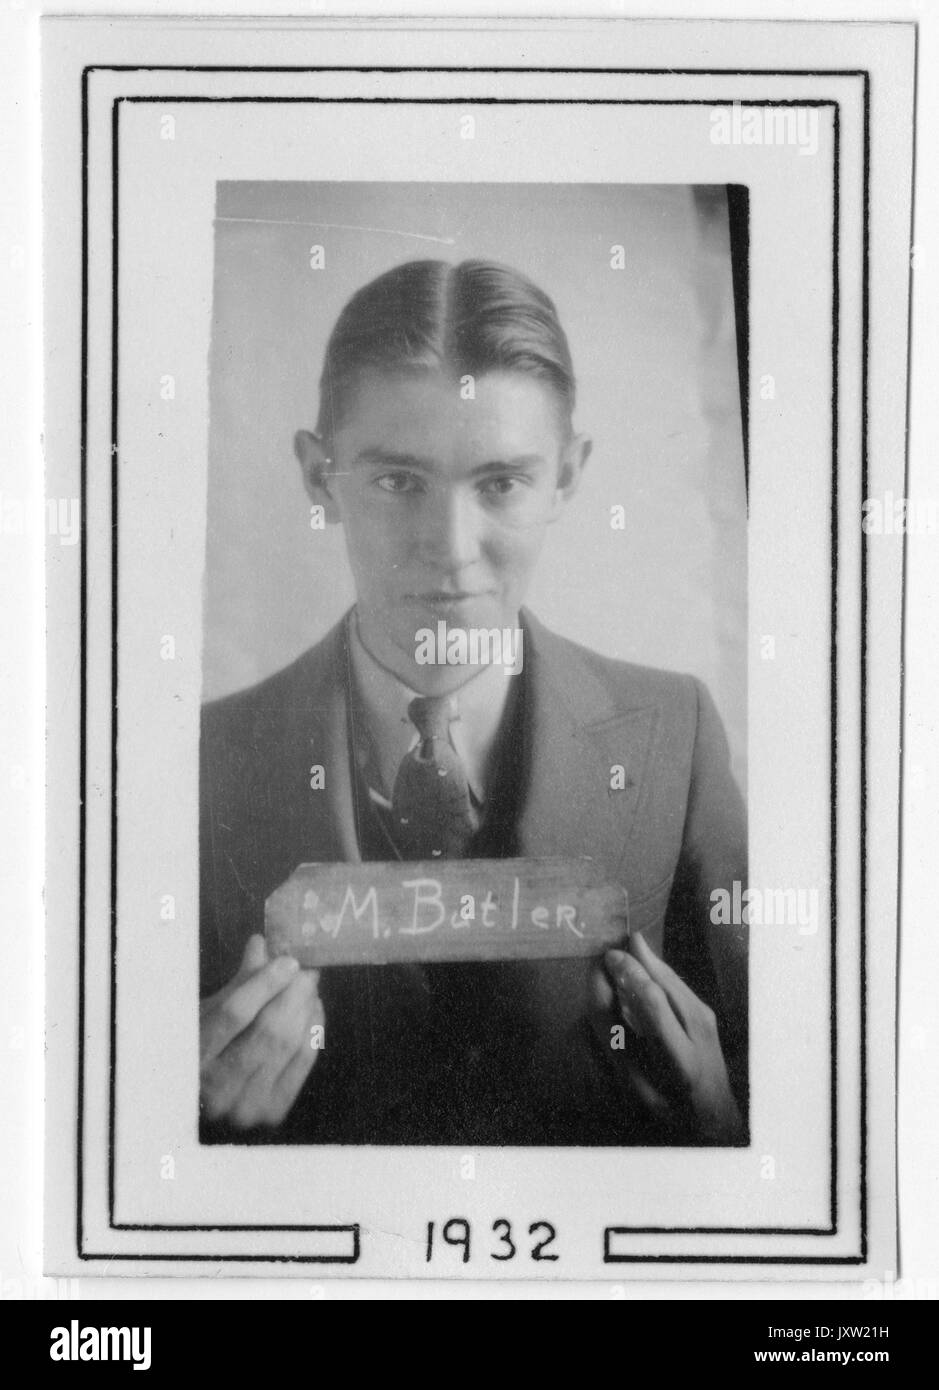 Martin edwin Butler, portrait Fotografie, Brustkorb, Gesicht, c 18 Jahre, 1932. Stockfoto